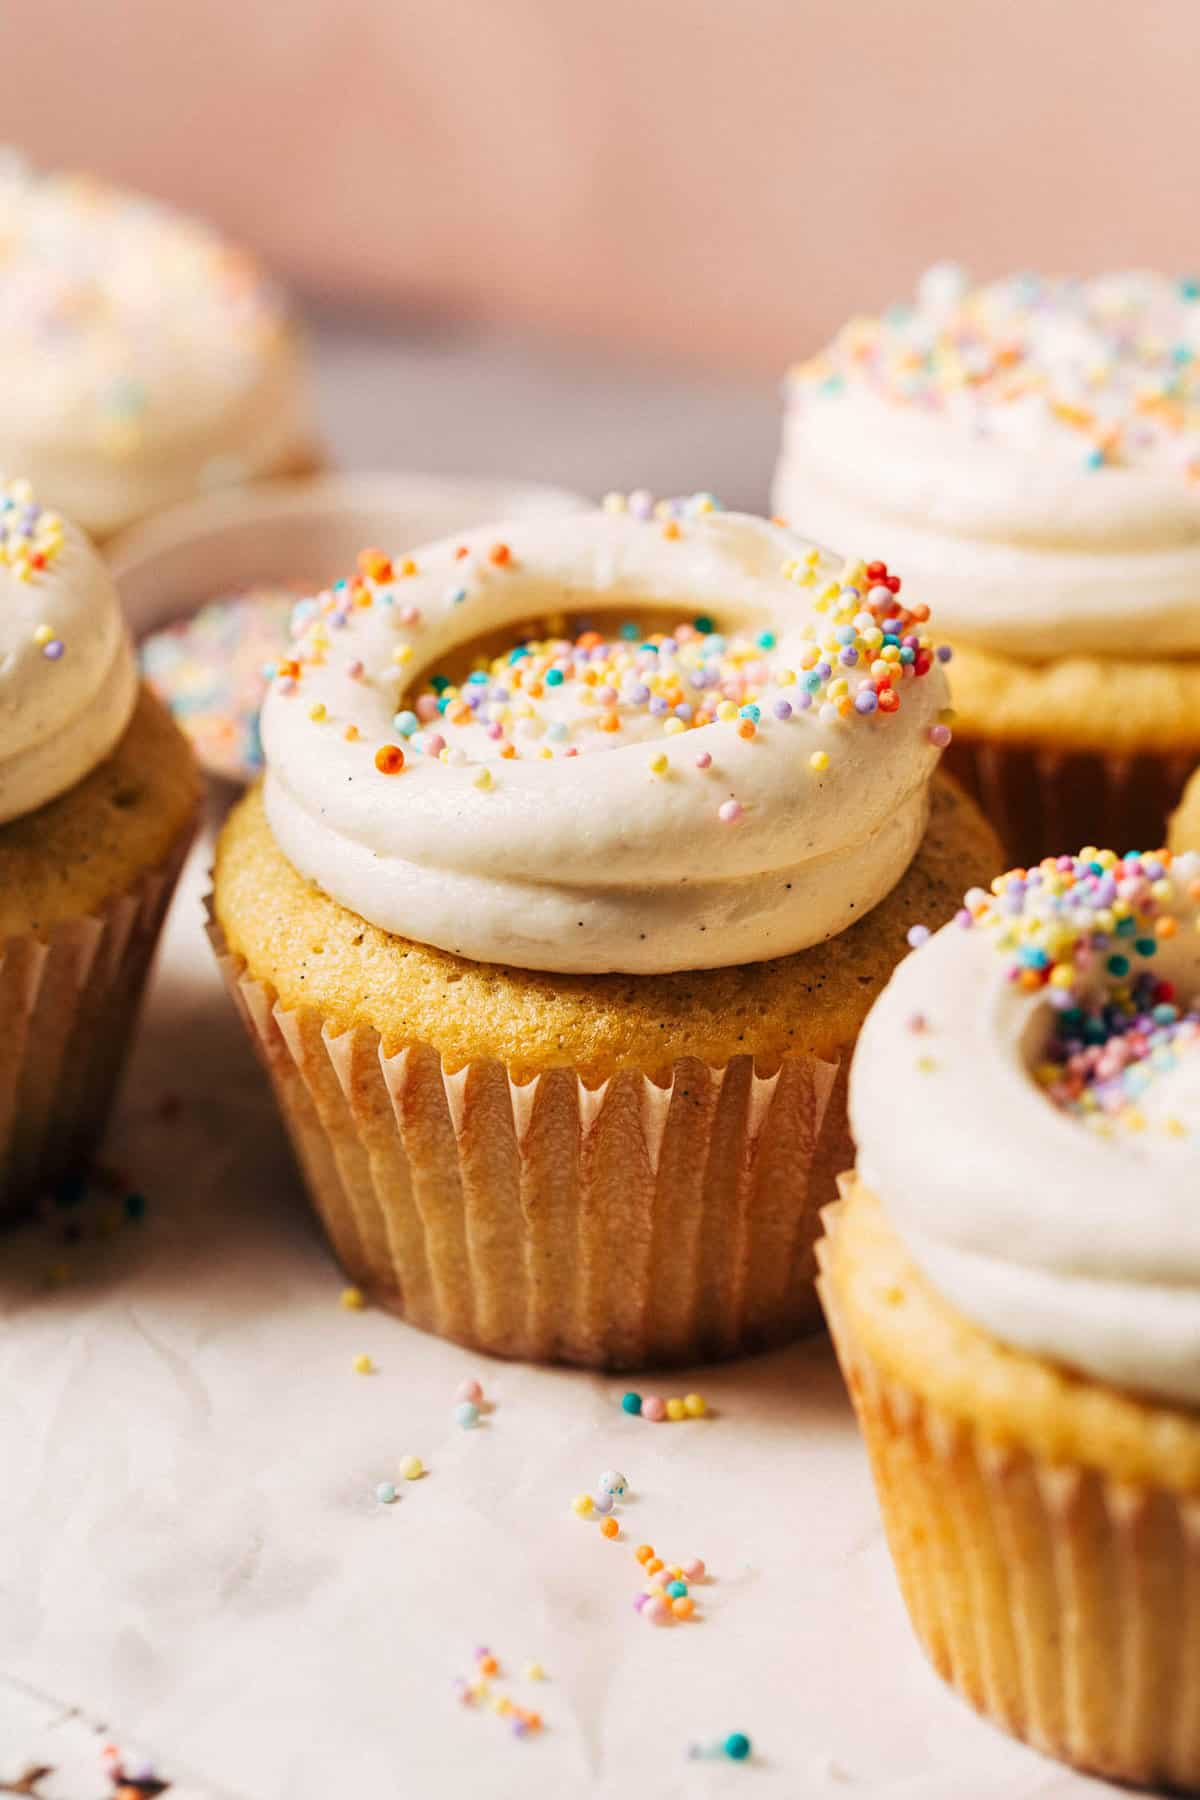 https://butternutbakeryblog.com/wp-content/uploads/2022/07/vanilla-cupcakes.jpg